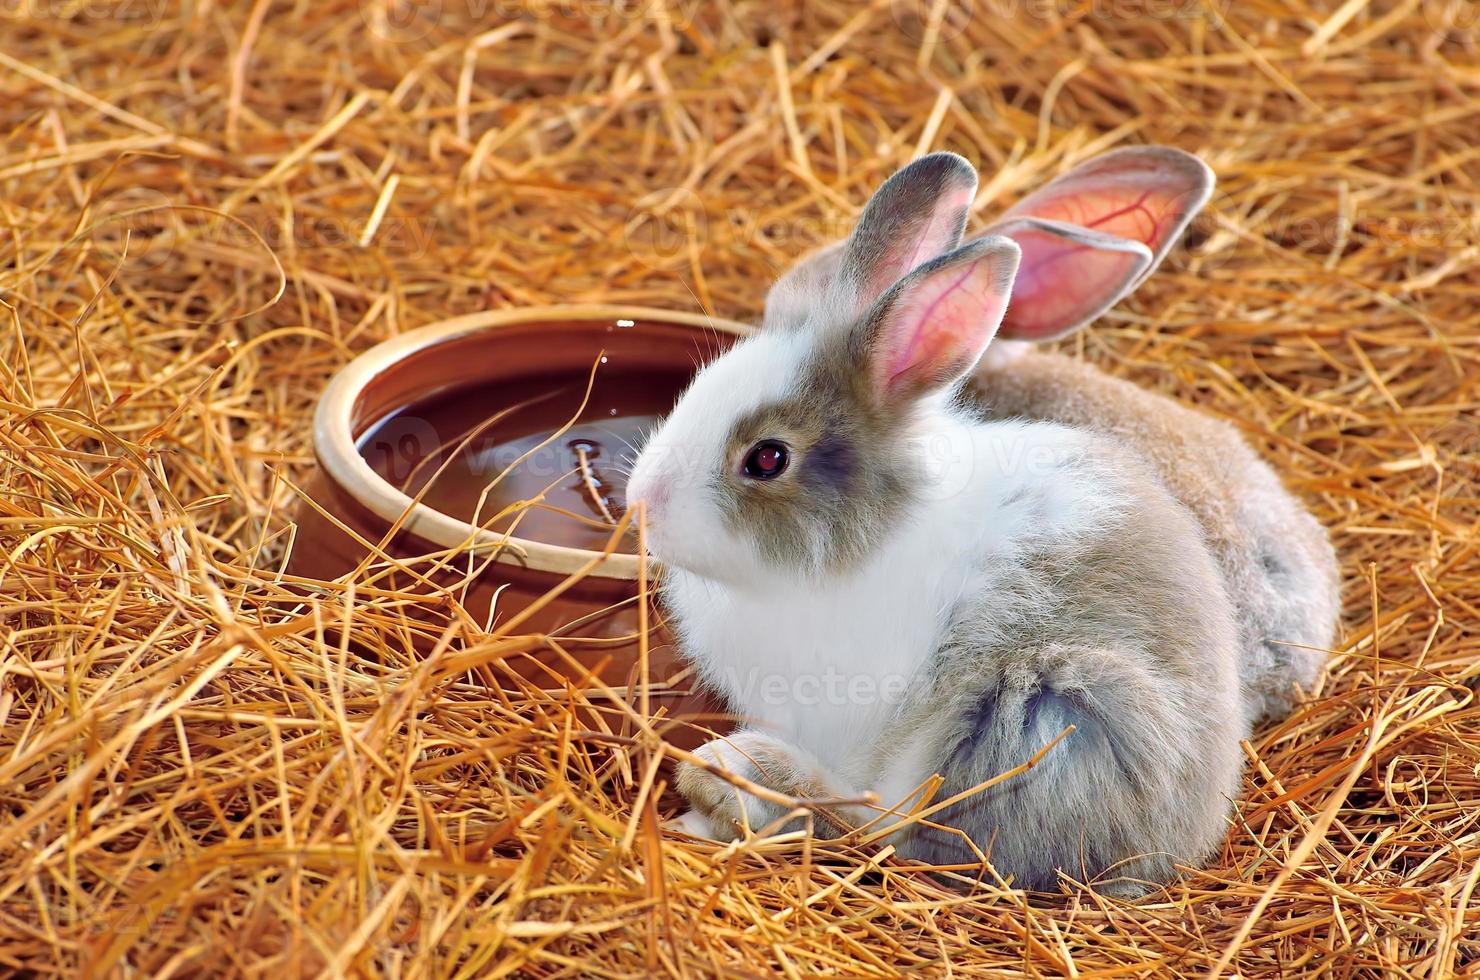 il coniglio è seduto su pagliai o erba secca foto